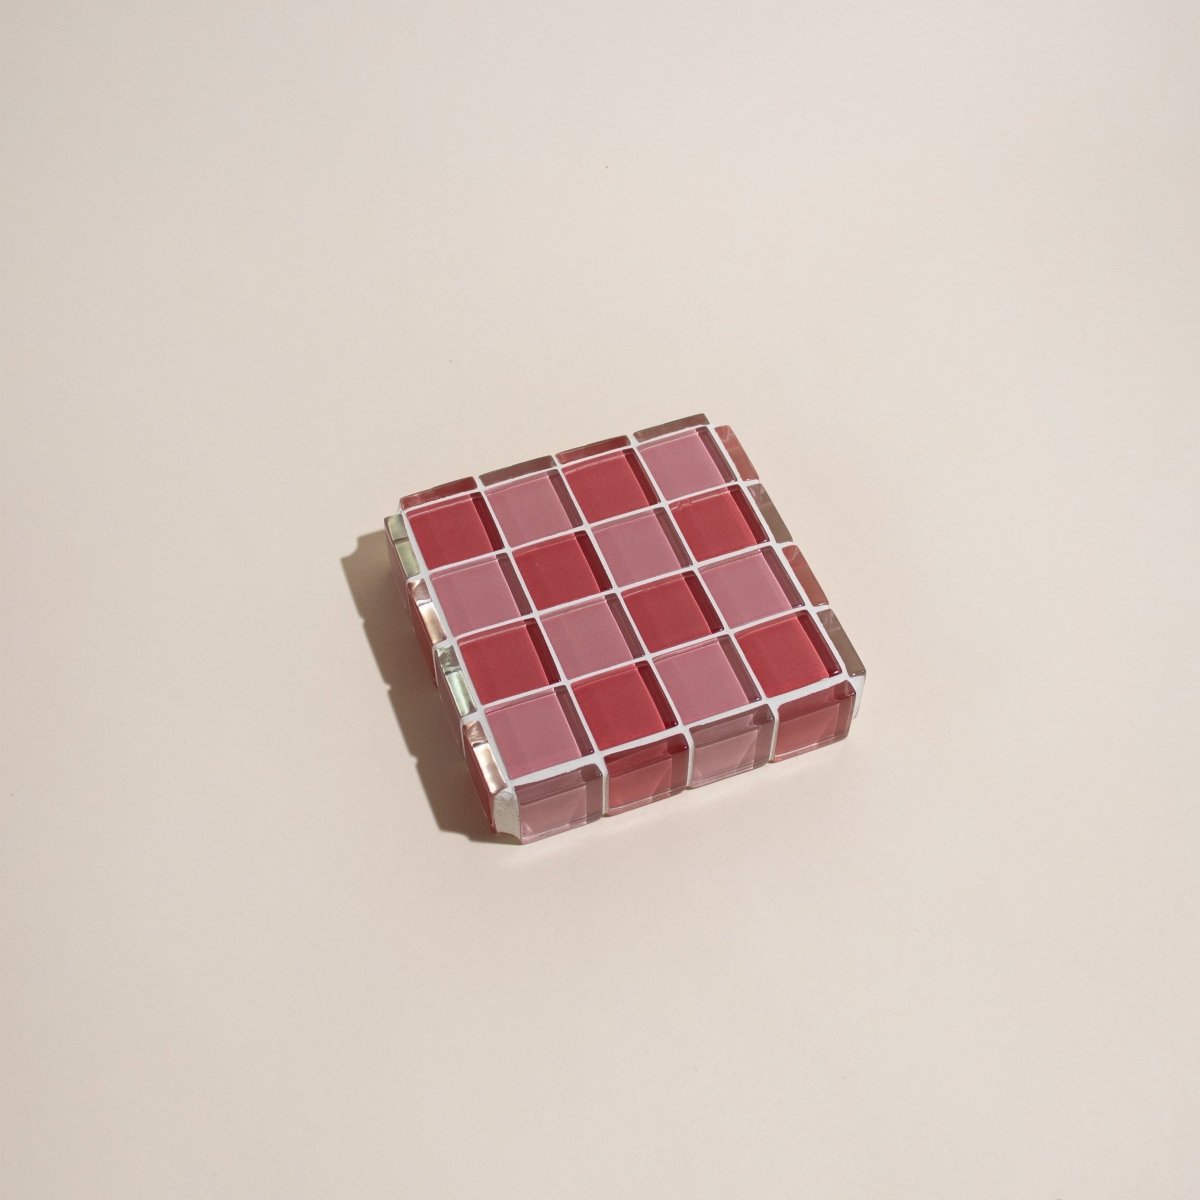 Subtle Art Studios Glass Tile Cube - Cotton Candy - lily & onyx